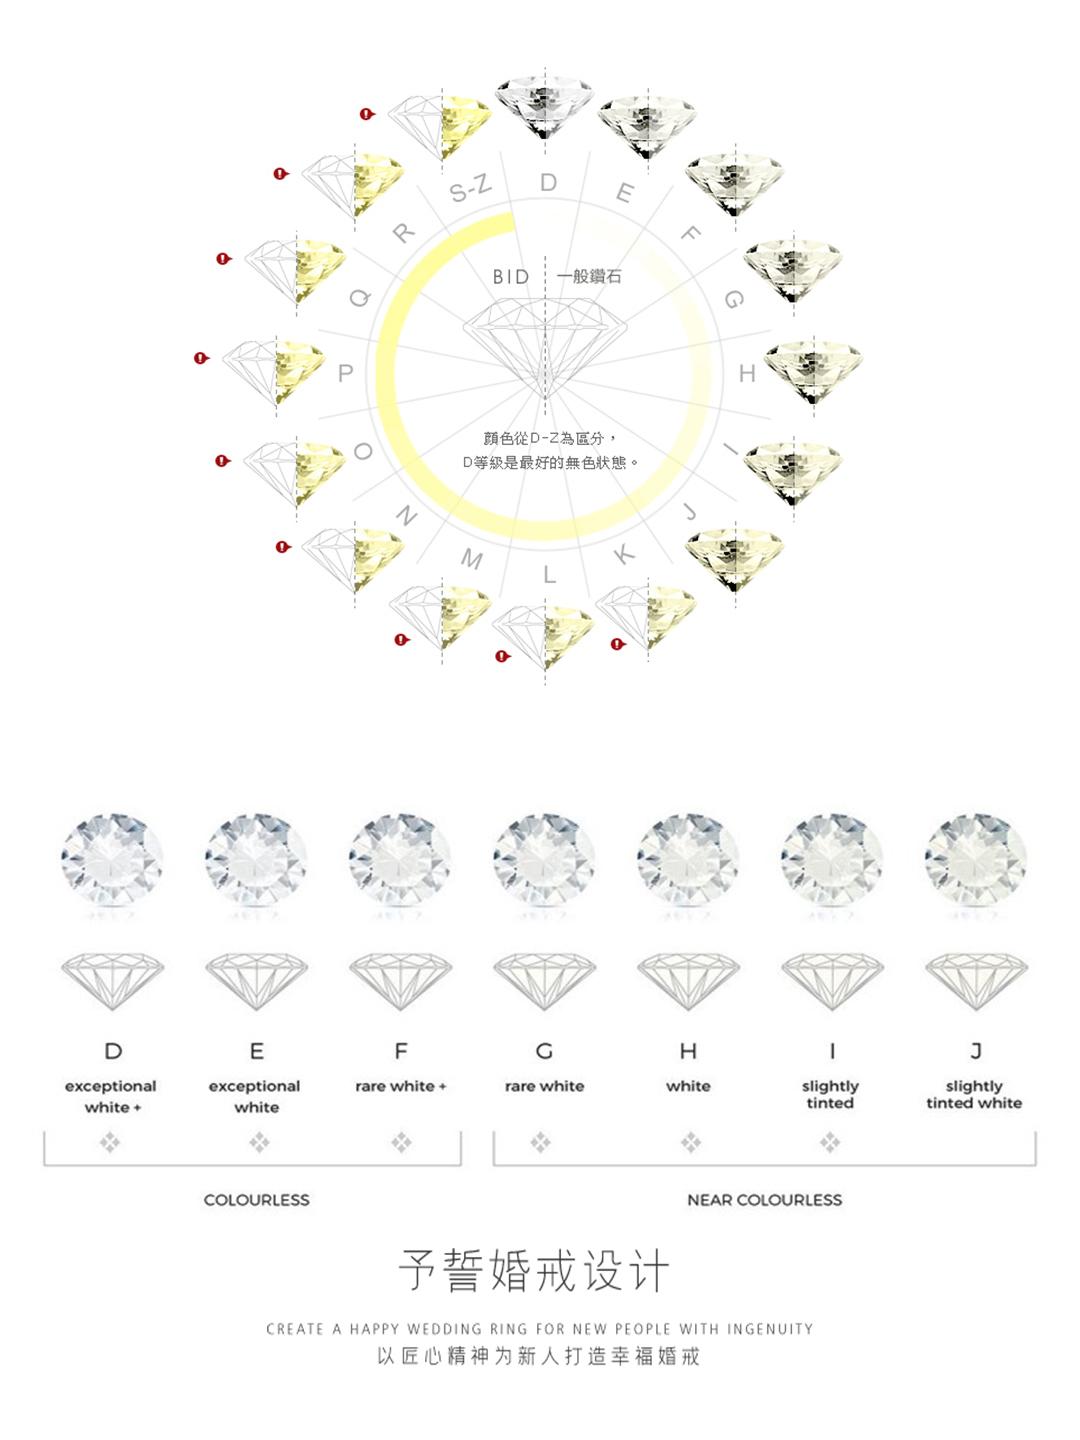 钻戒成色主要看钻石颜色等级,钻石颜色又分为白钻和彩钻,我们通常用